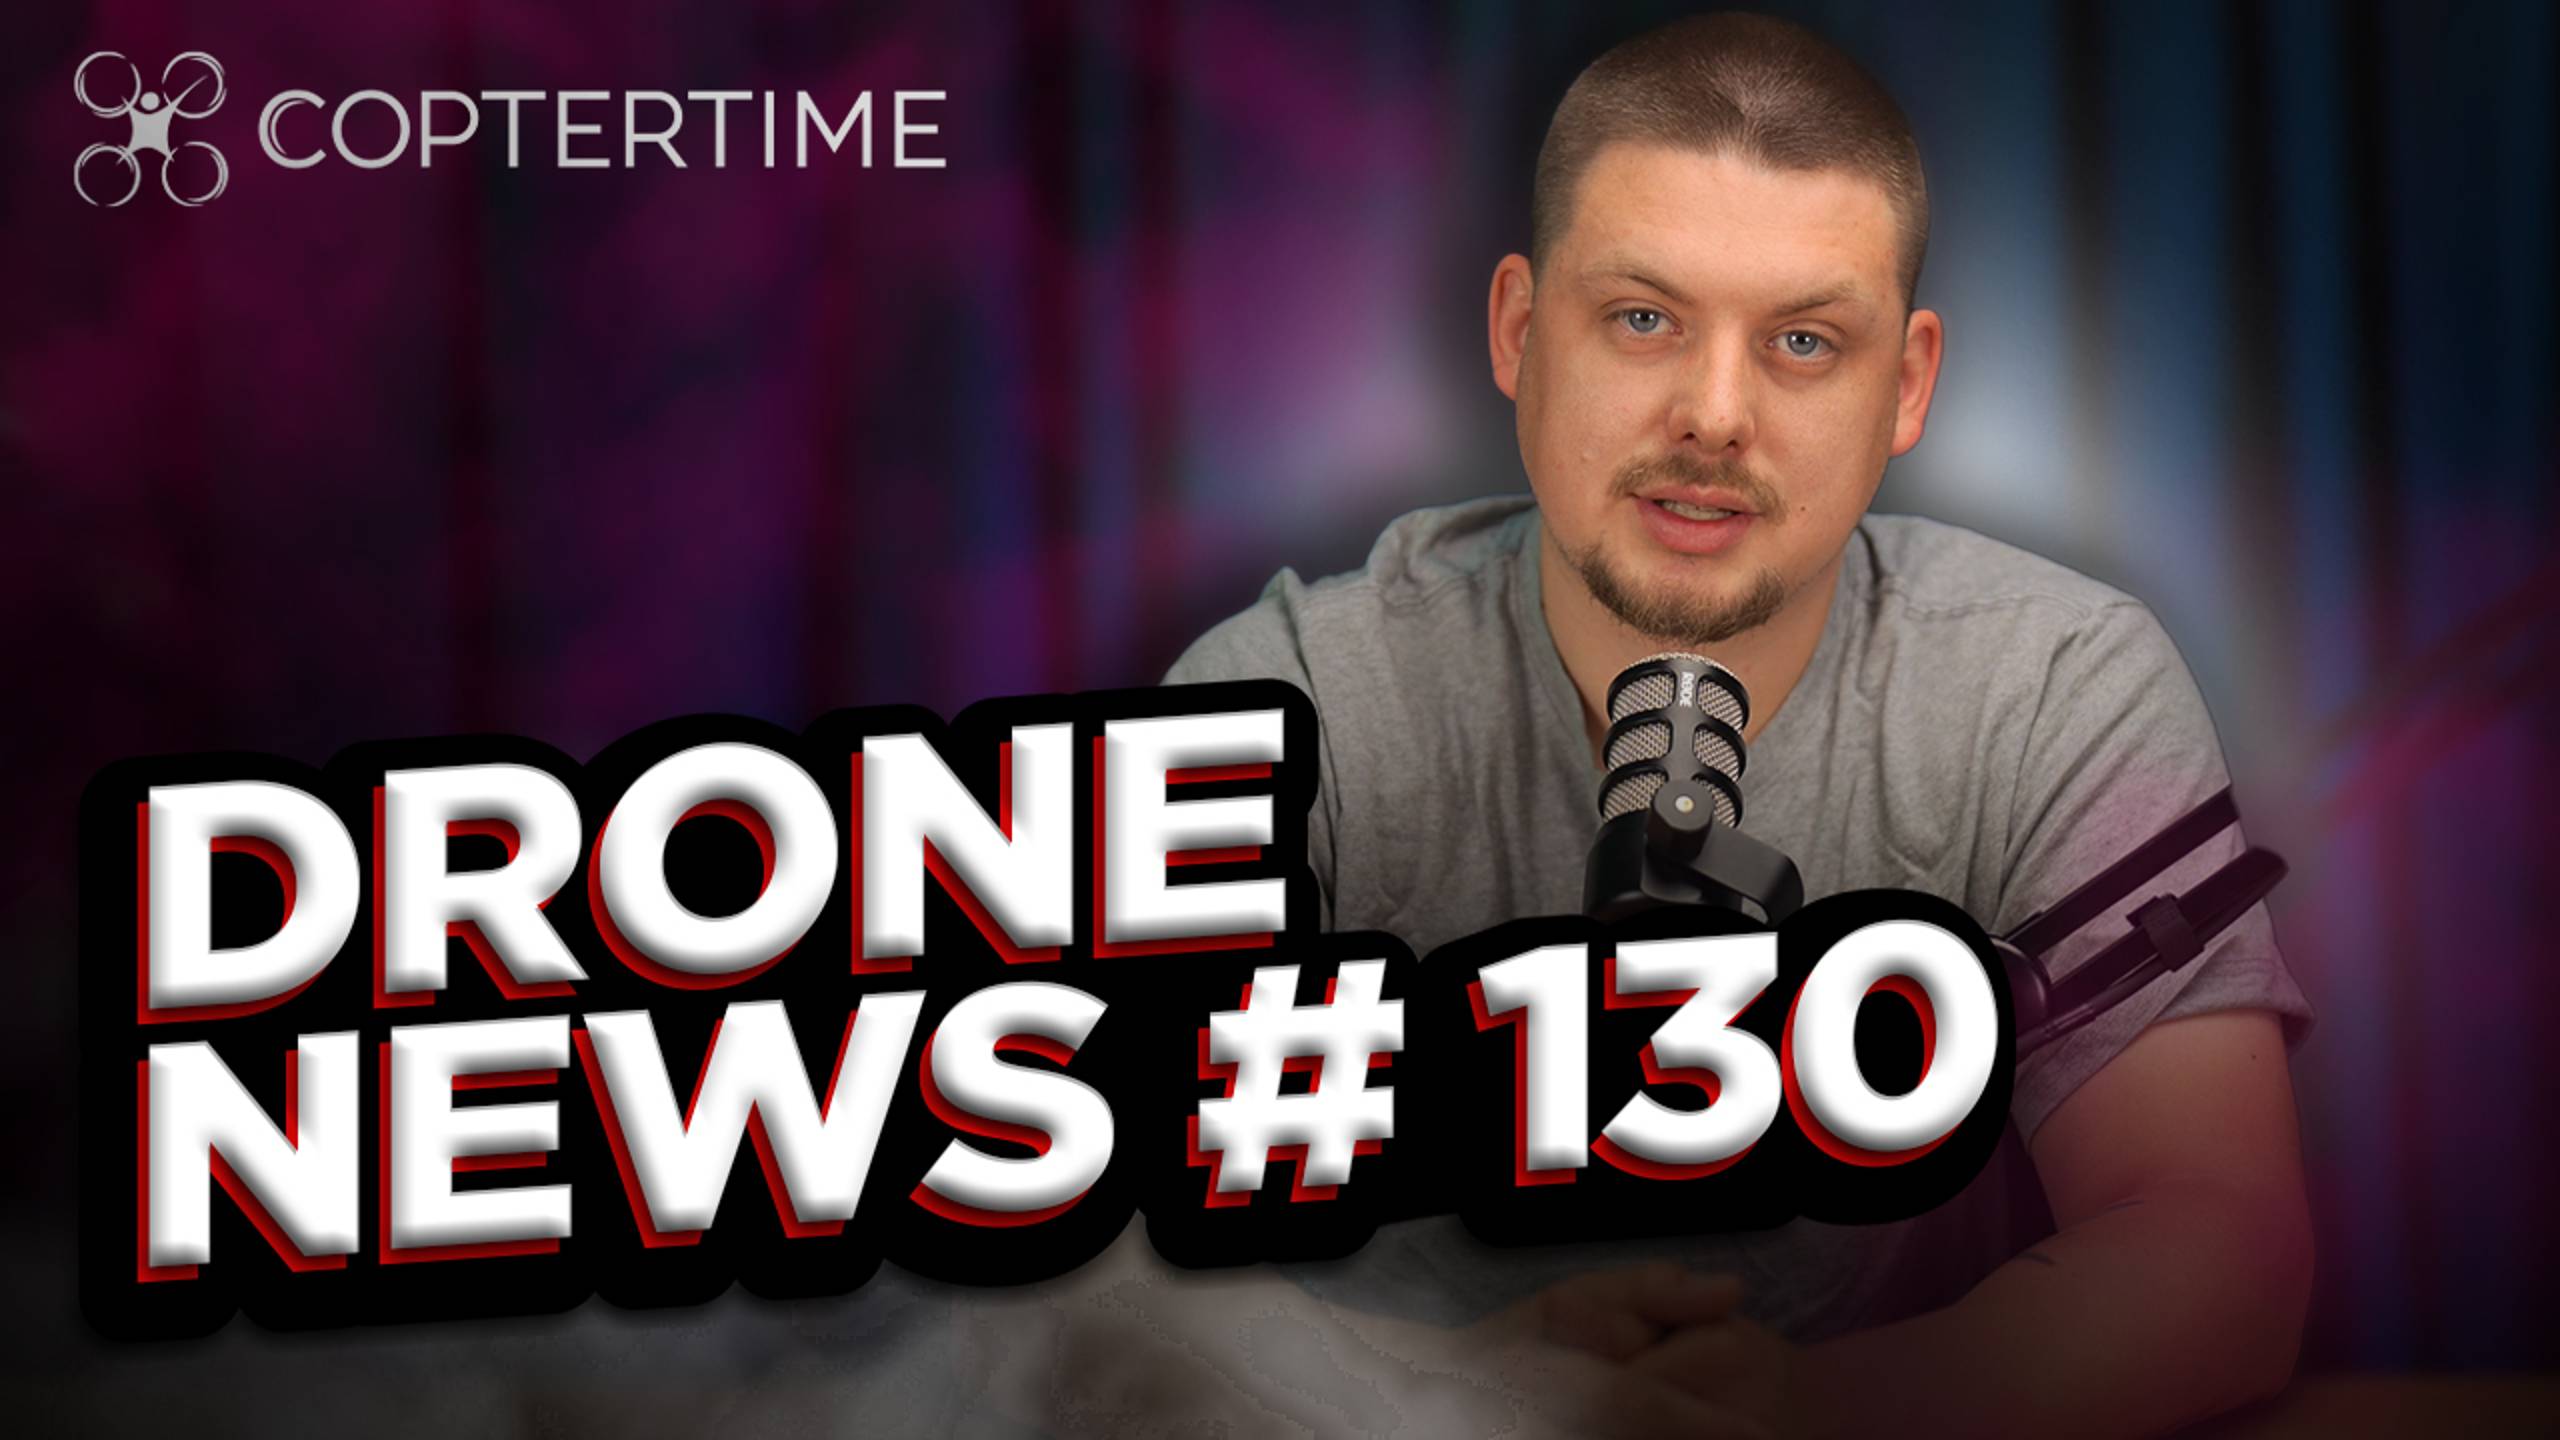 Drone news #130: новый коптер Aeroo Pro и управление дроном через спутник